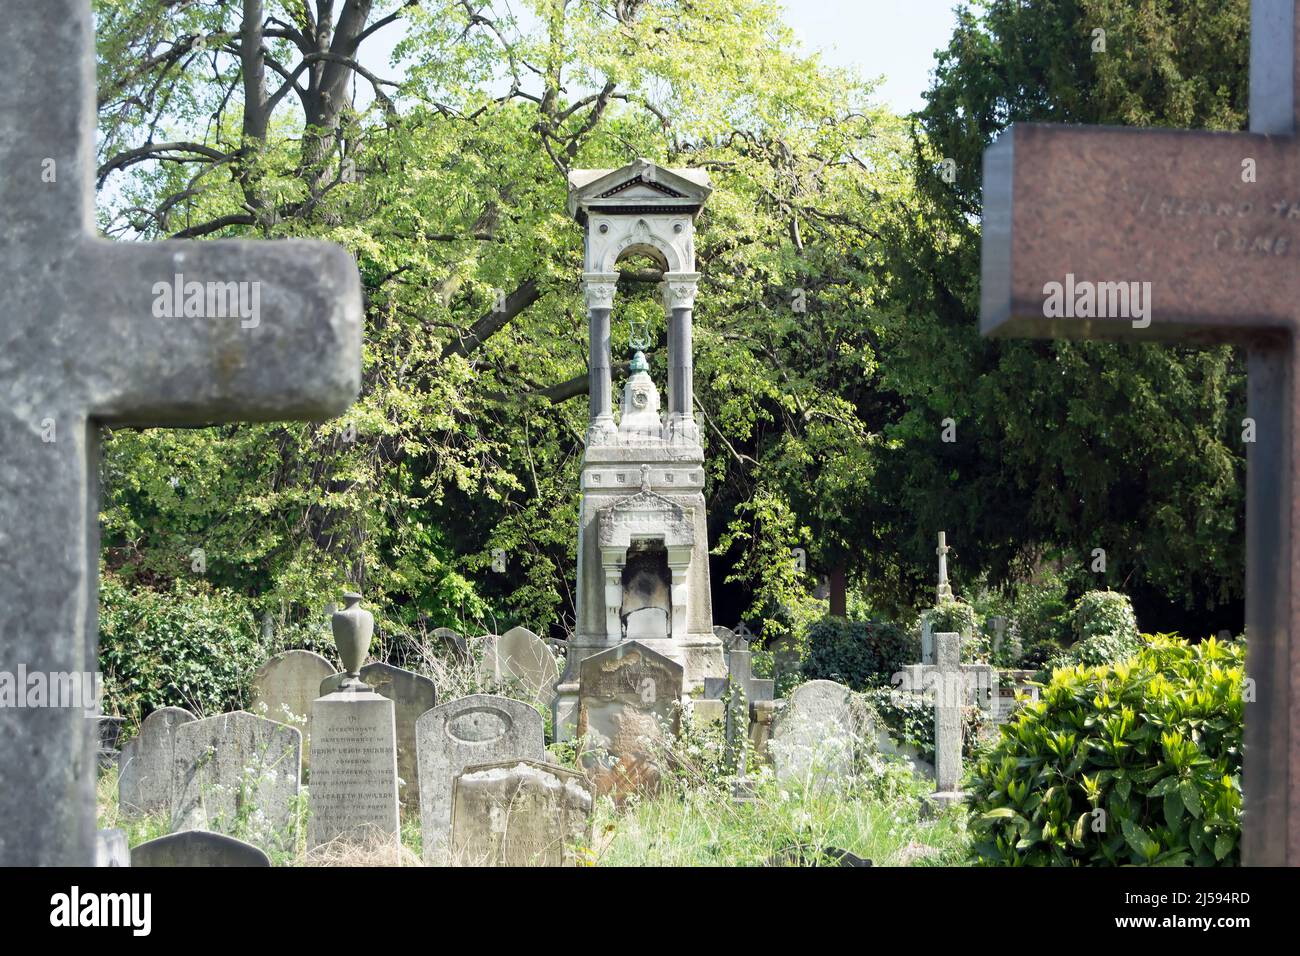 Denkmal für alfred mellon am Grab des Geigers, Komponisten und Dirigenten des 19.. Jahrhunderts auf dem brompton Friedhof, london, england Stockfoto